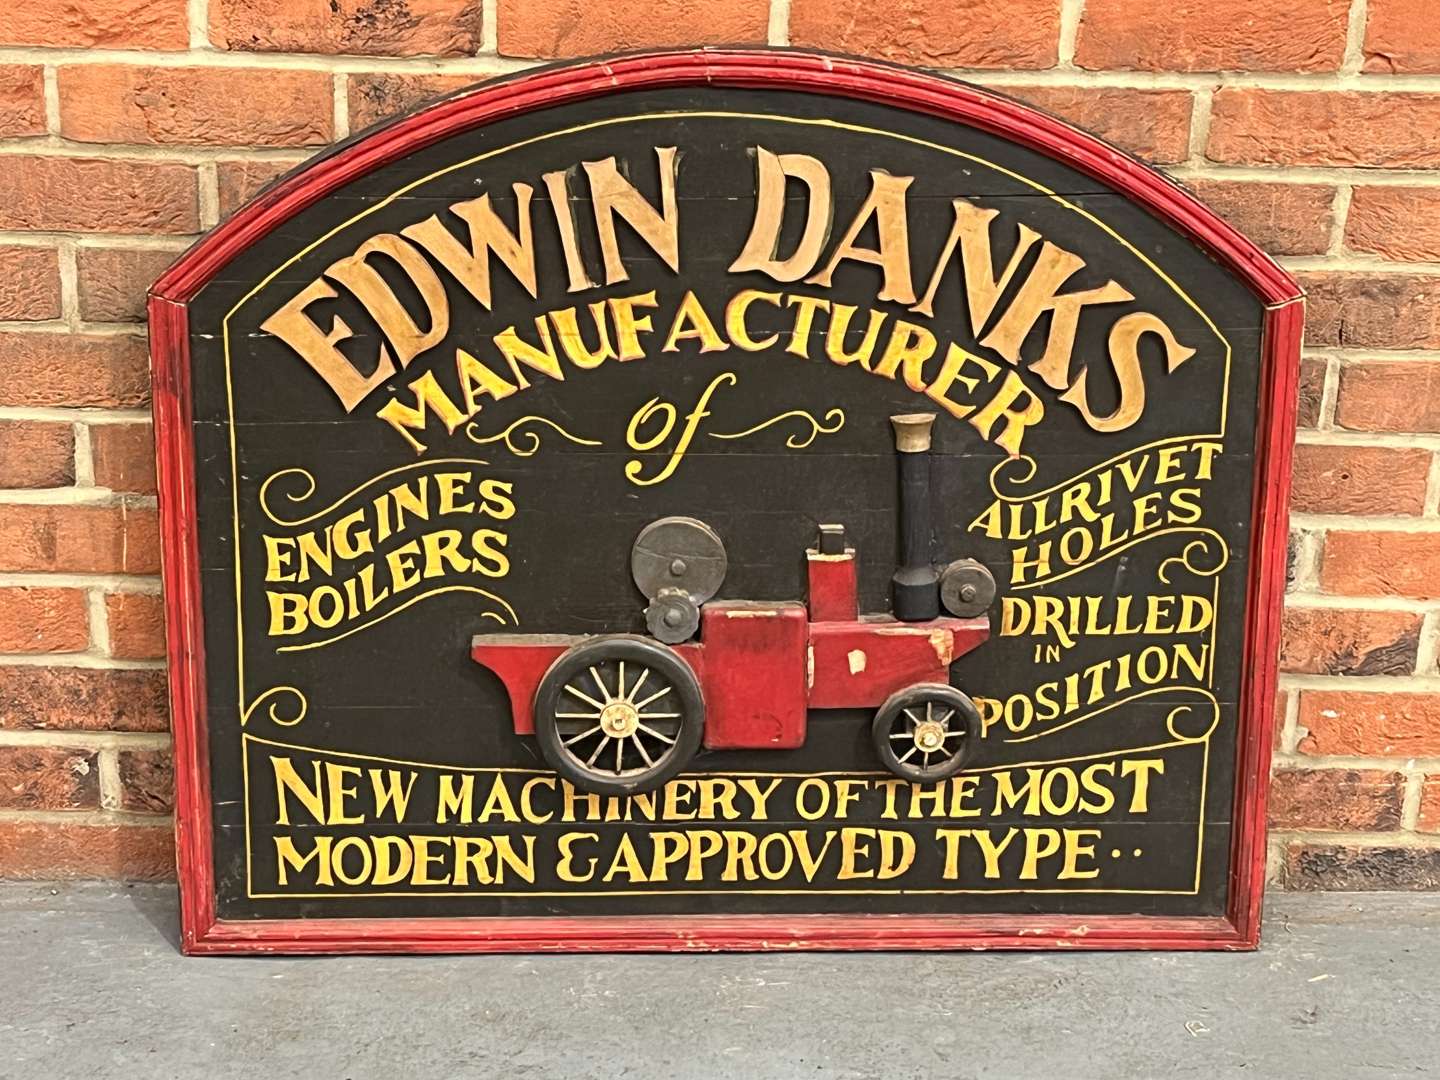 <p>Edwin Danks Wooden Made Sign</p>